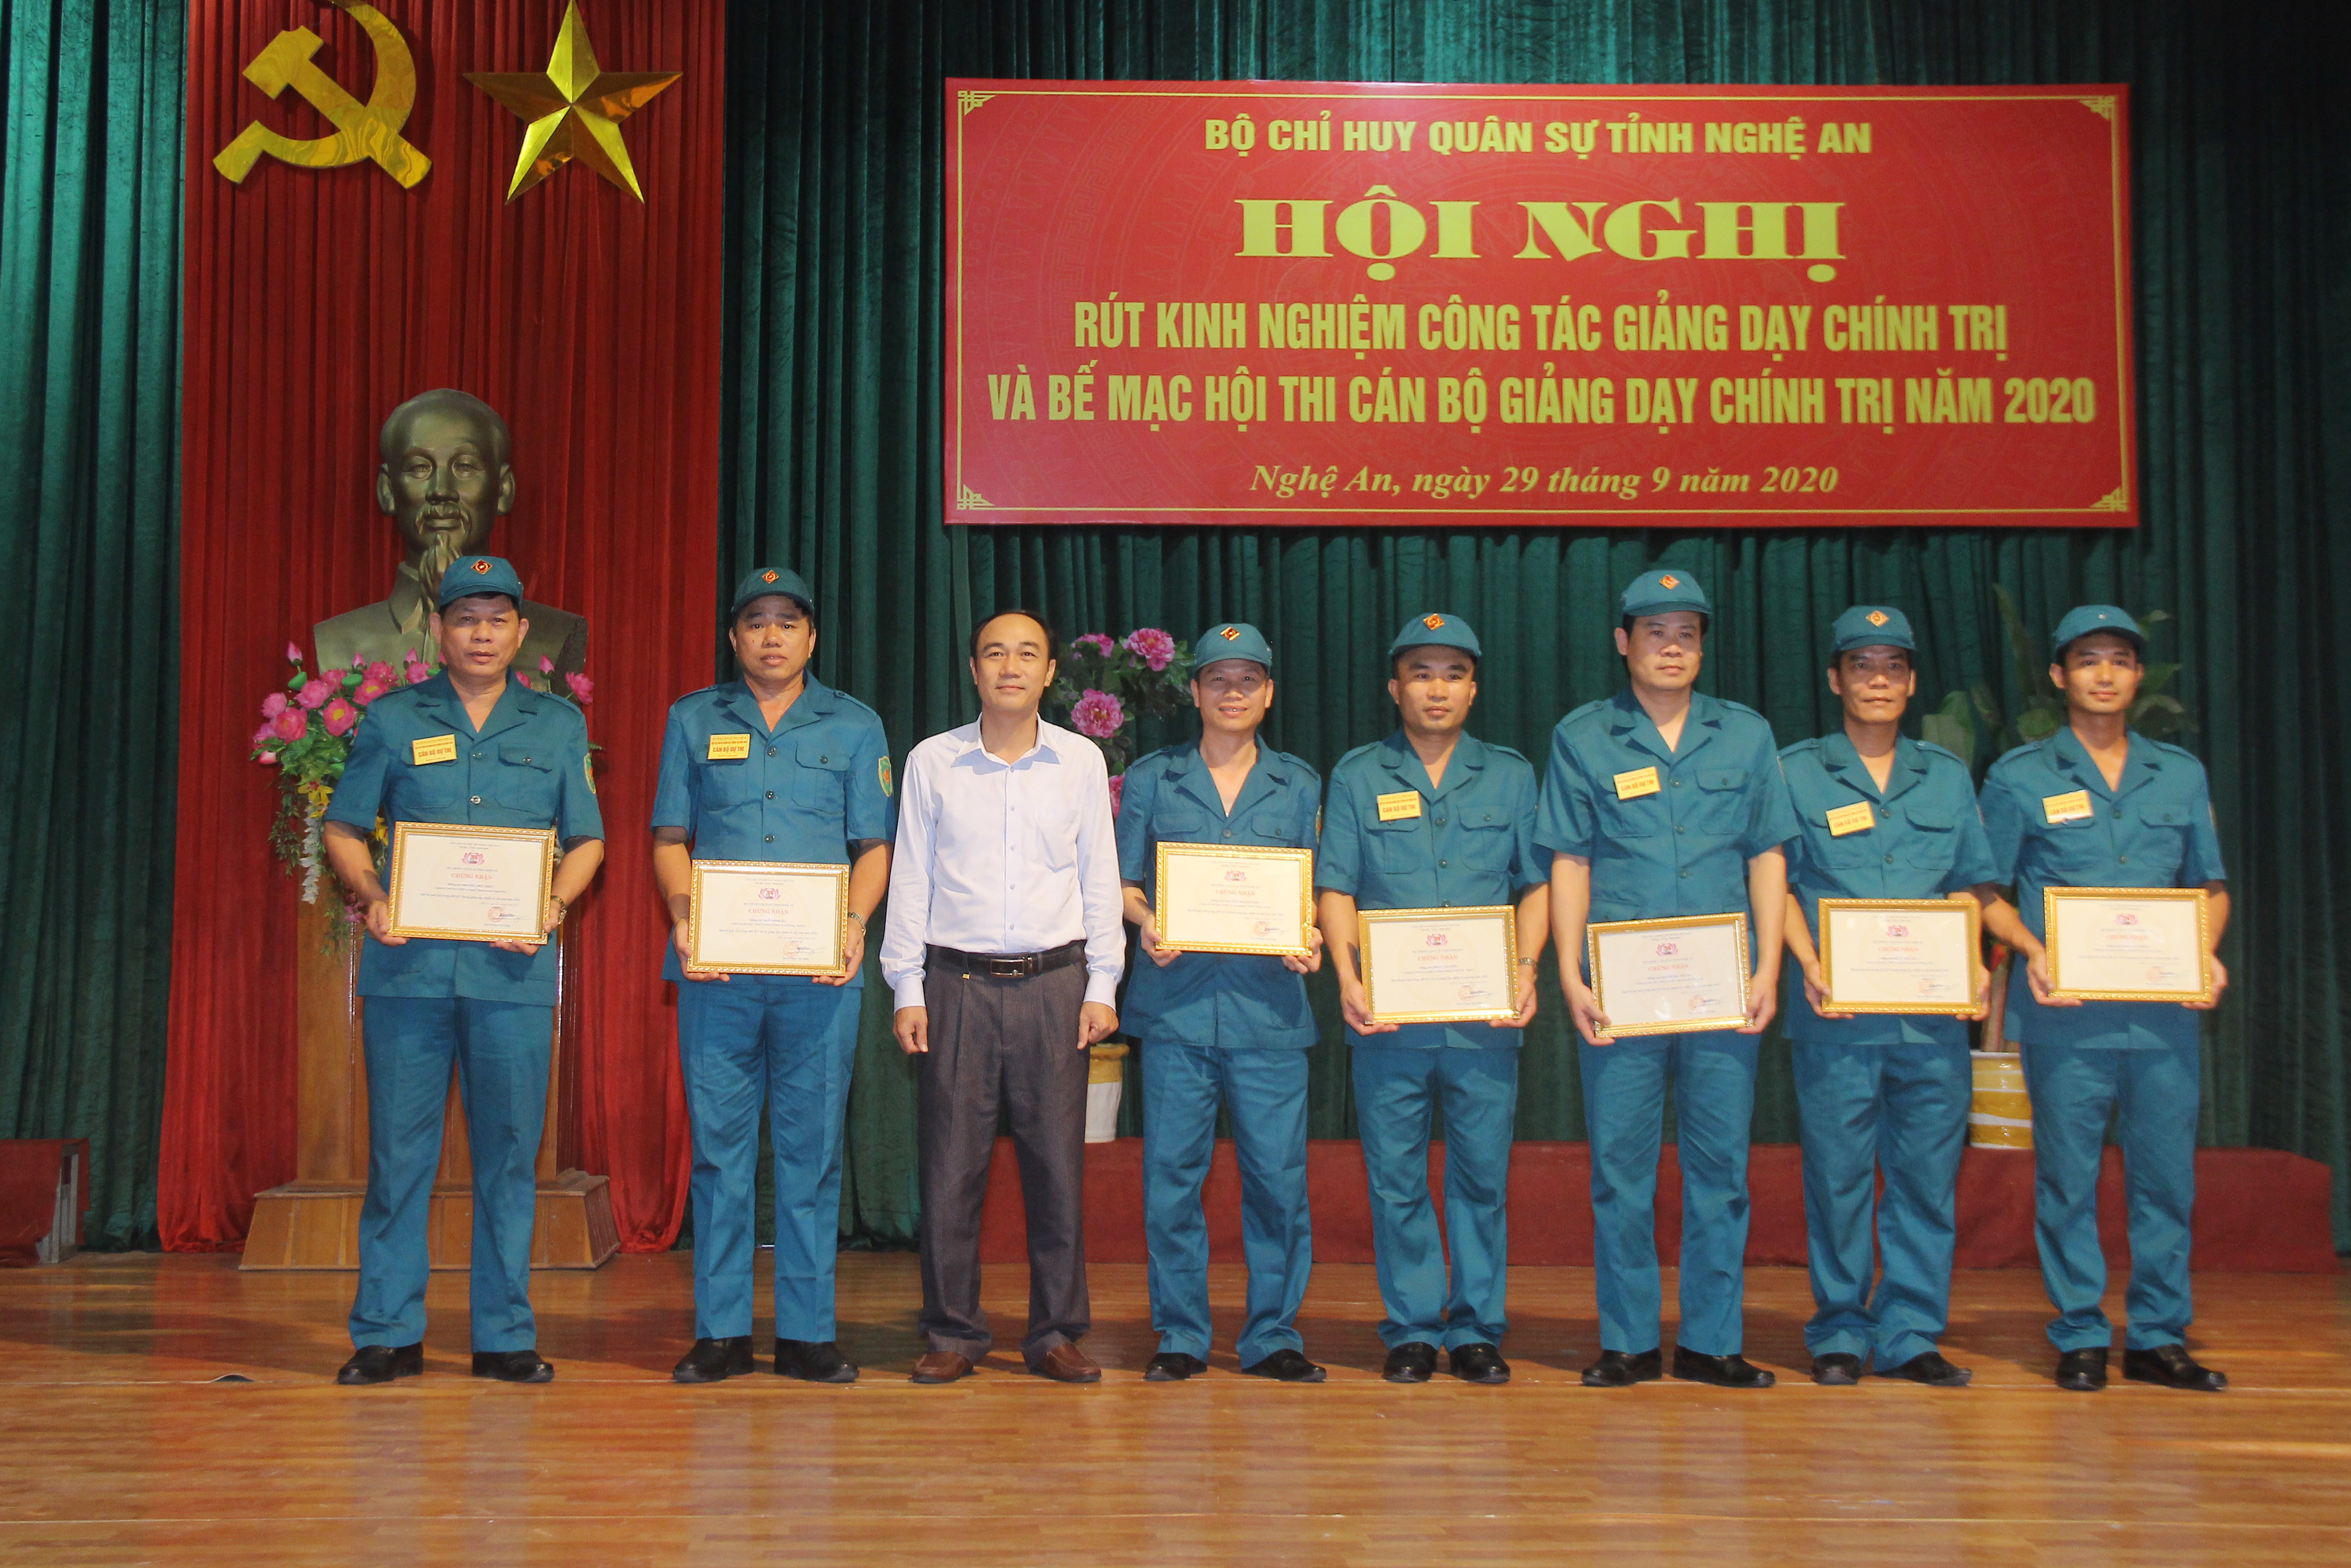 Đồng chí Trần Quốc Khánh - Phó trưởng ban Tuyên giáo Tỉnh ủy trao giấy chứng nhận 